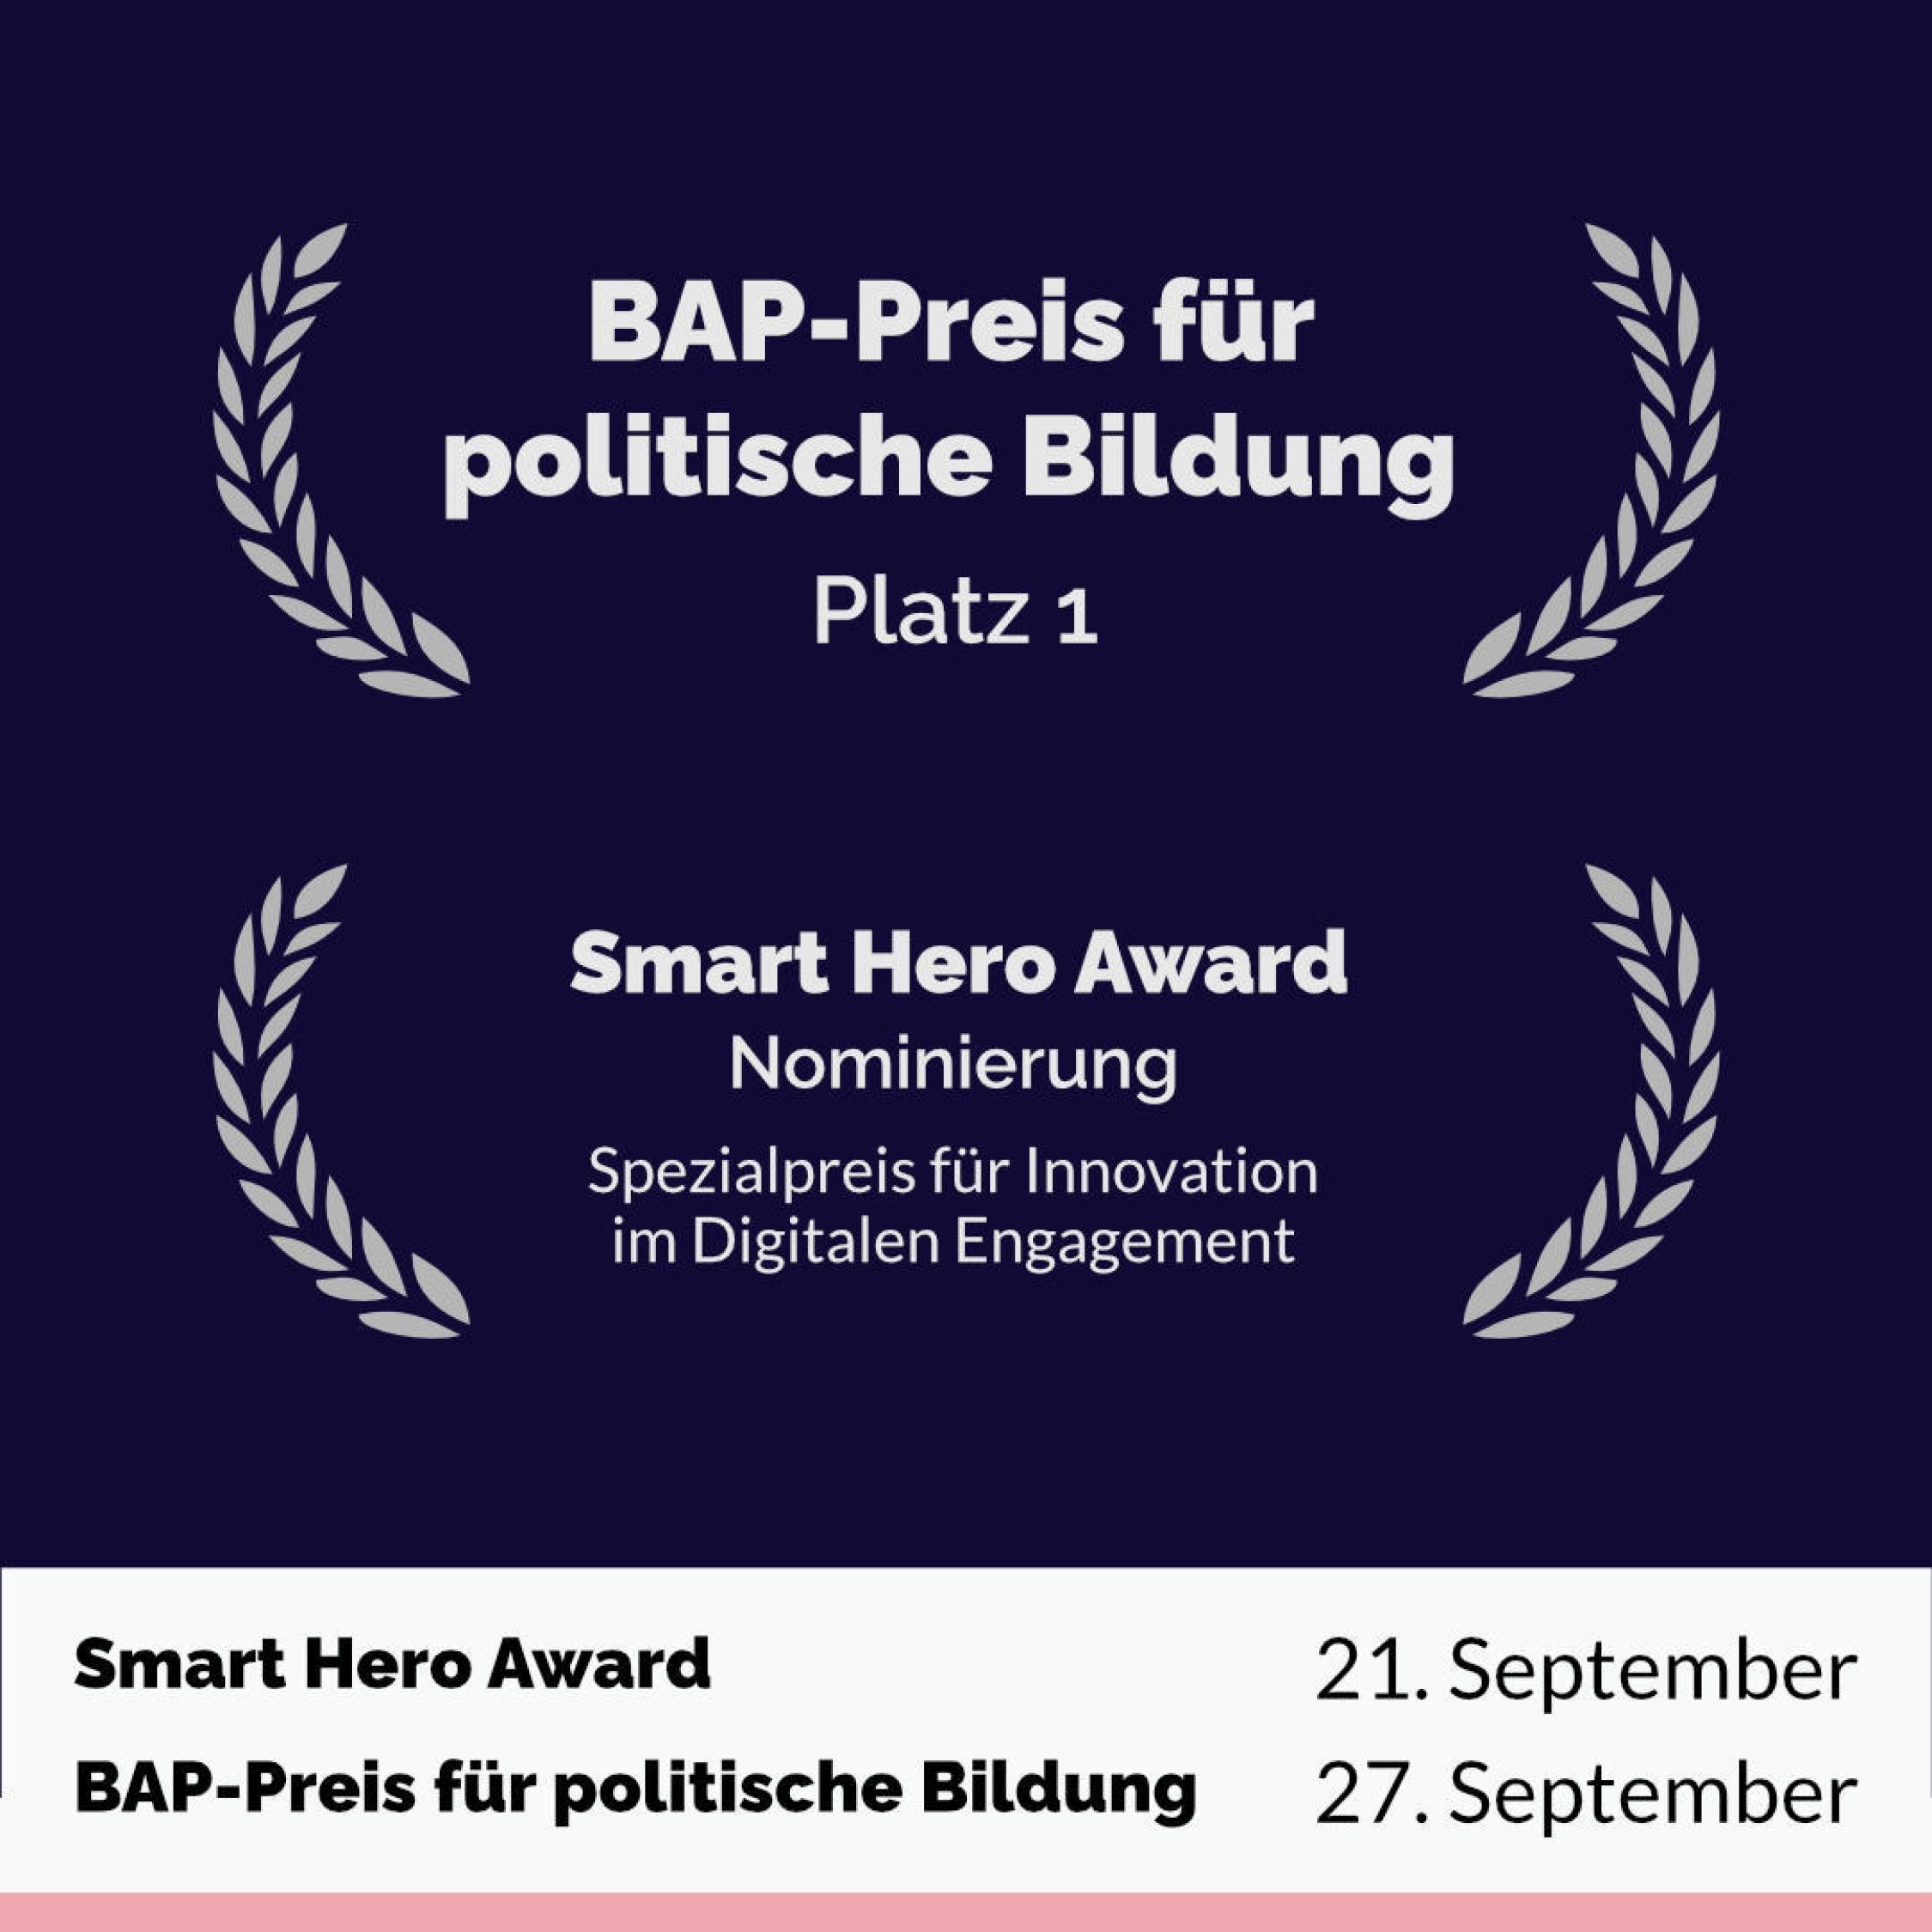 BAP-Preis für politische Bildung Platz 1 und Smart Hero Award Nominierung